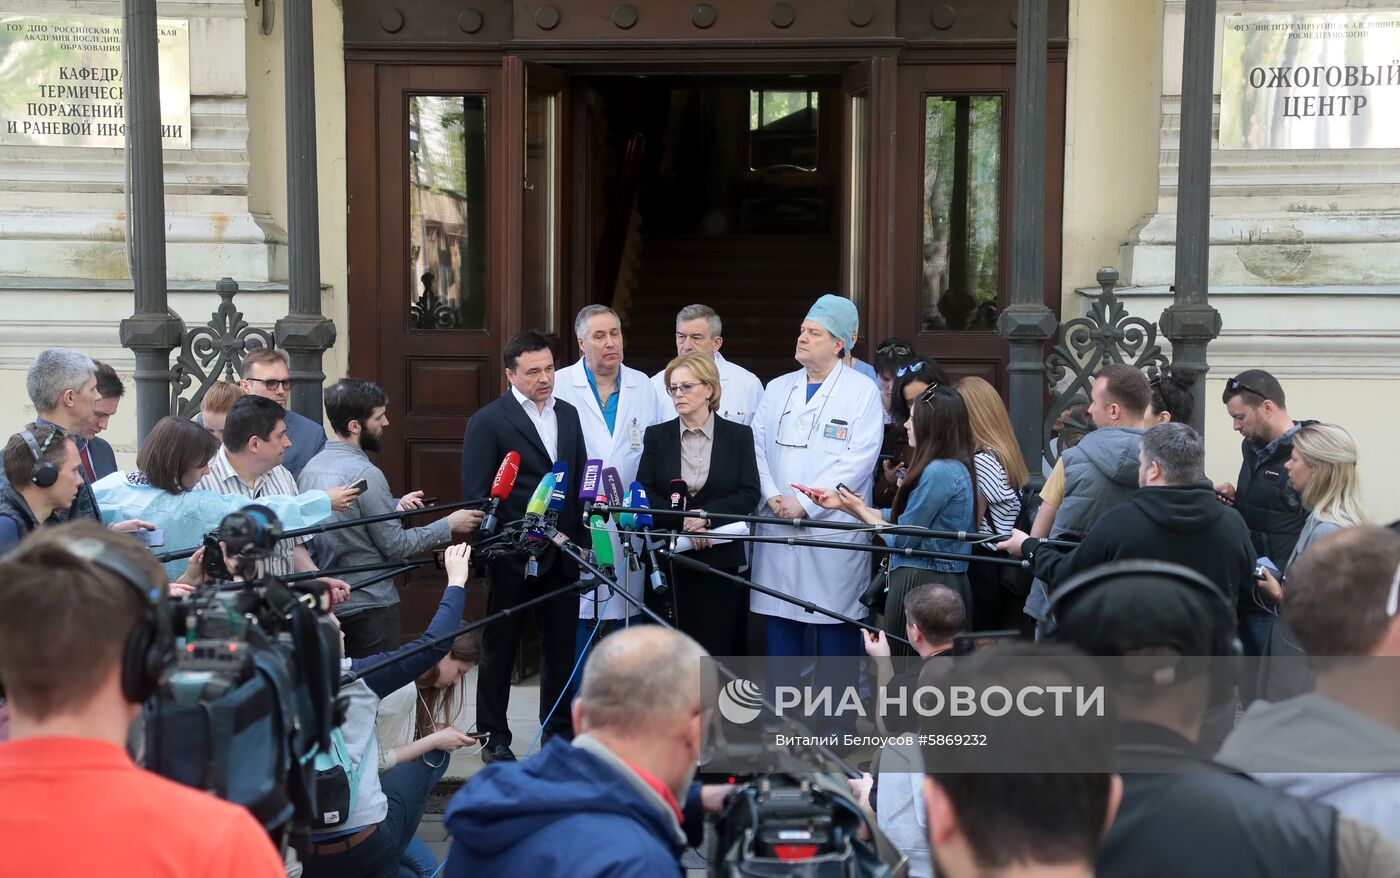 Министр здравоохранения РФ В. Скворцова посетила пострадавших в результате аварийной посадки самолета в Шереметьево